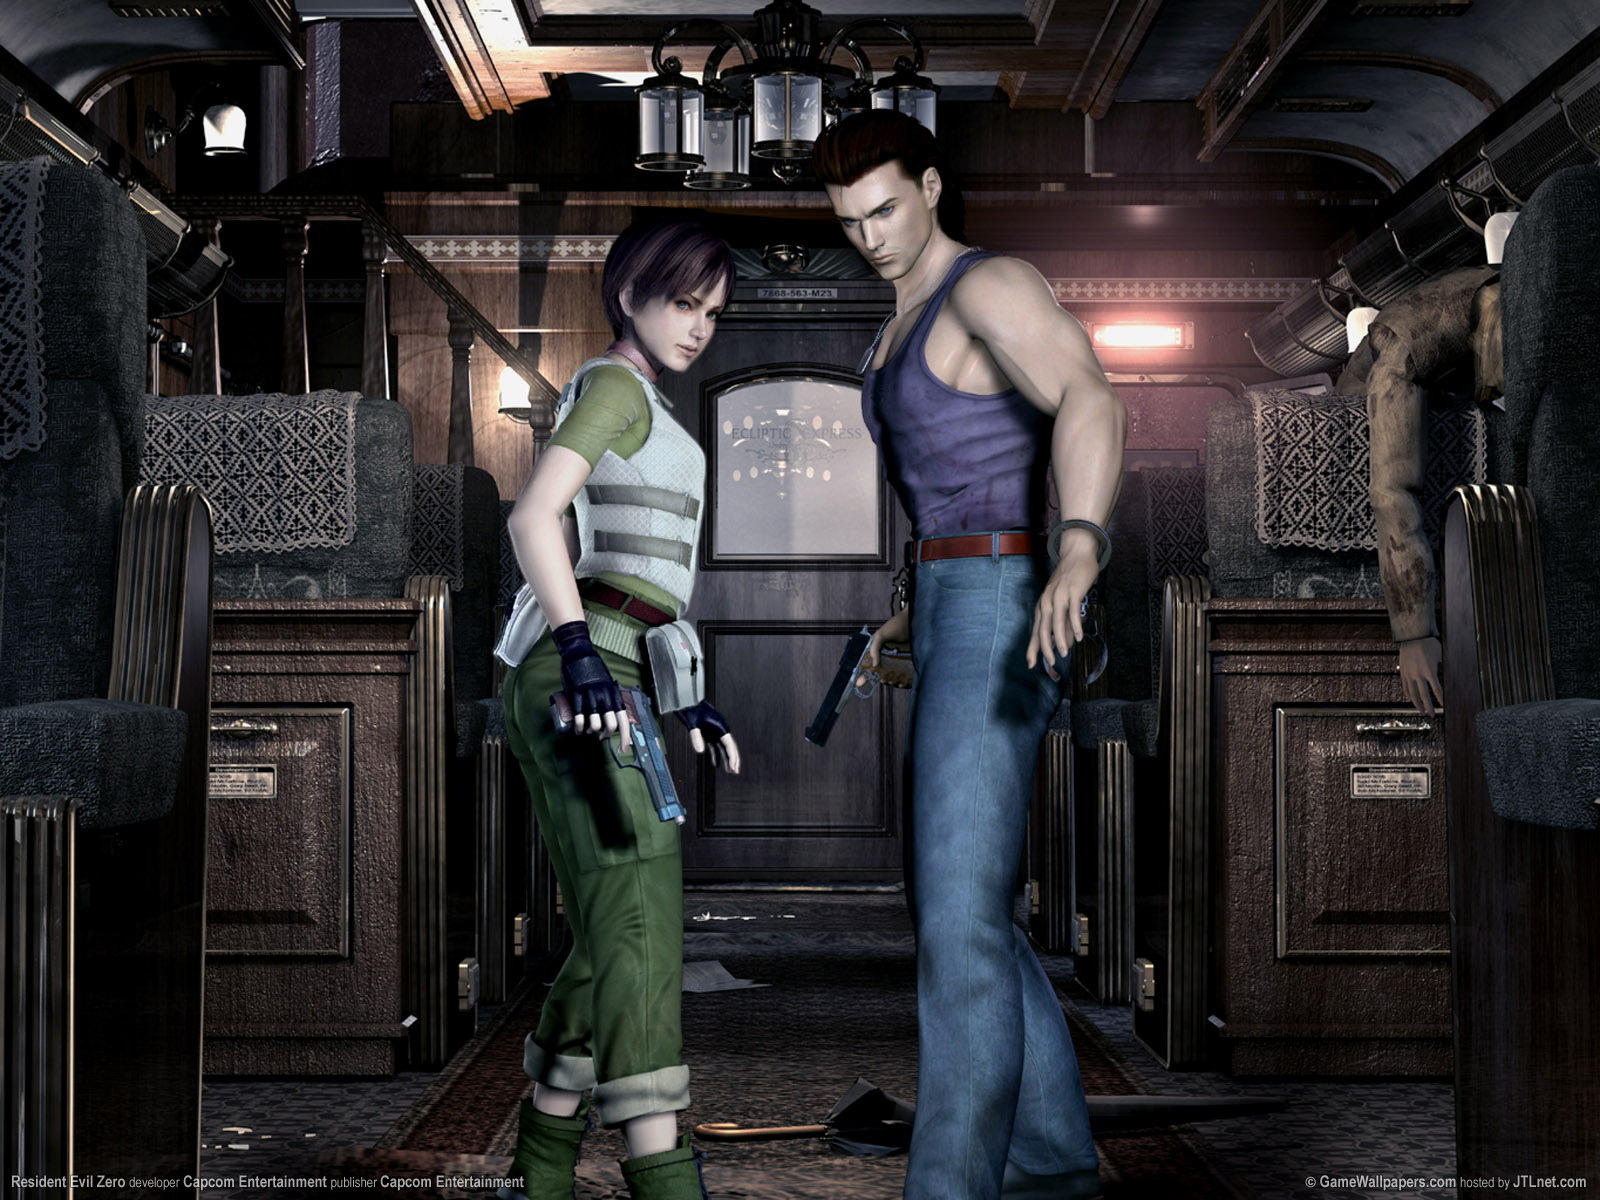 Resident Evil Zero Fondos De Pantalla Fotos